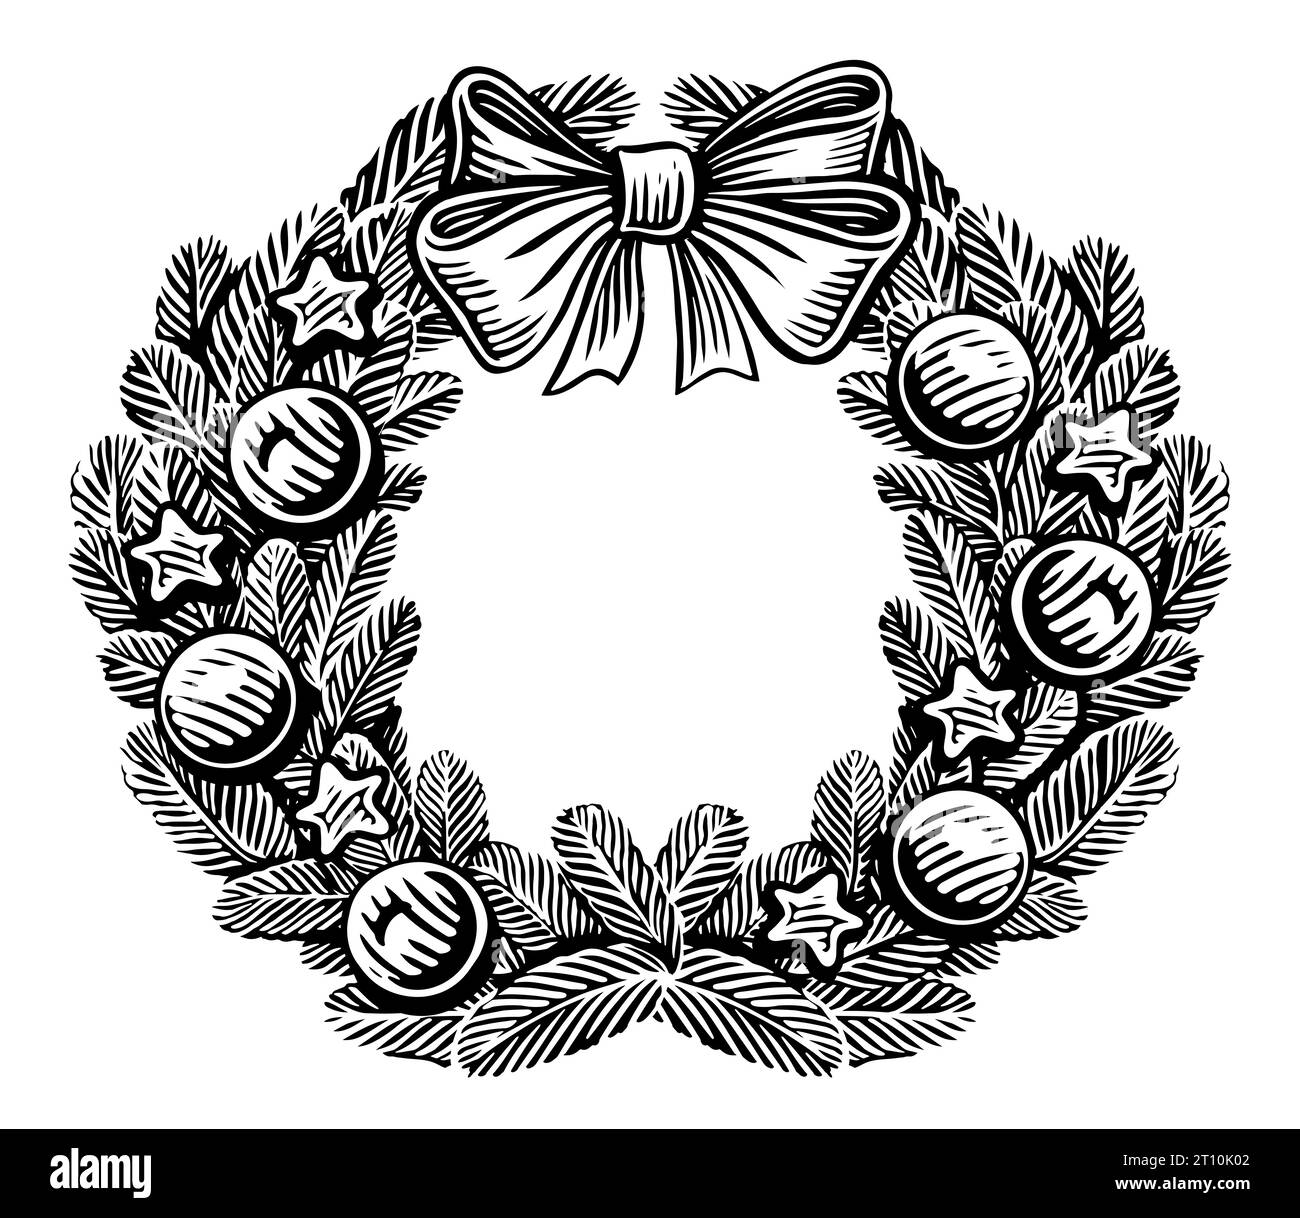 Corona natalizia di rami di abete, decorata con arco di raso e palle decorative. Illustrazione di schizzi vintage Foto Stock